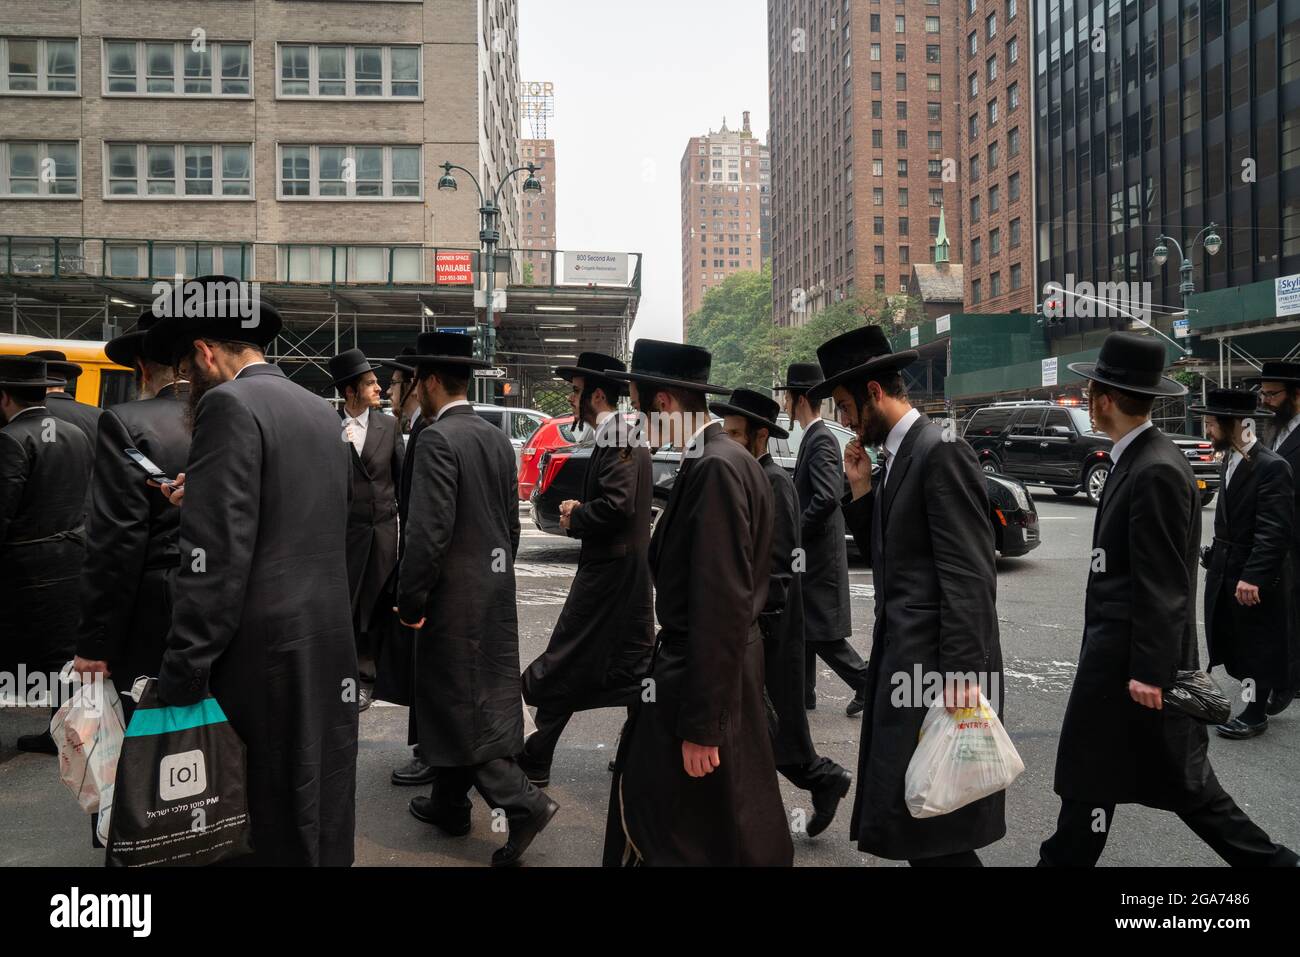 NEW YORK, STATI UNITI - 21 luglio 2021: Ebrei ultra-ortodossi protestano contro le politiche del governo israeliano al di fuori del consolato israeliano a New York Foto Stock